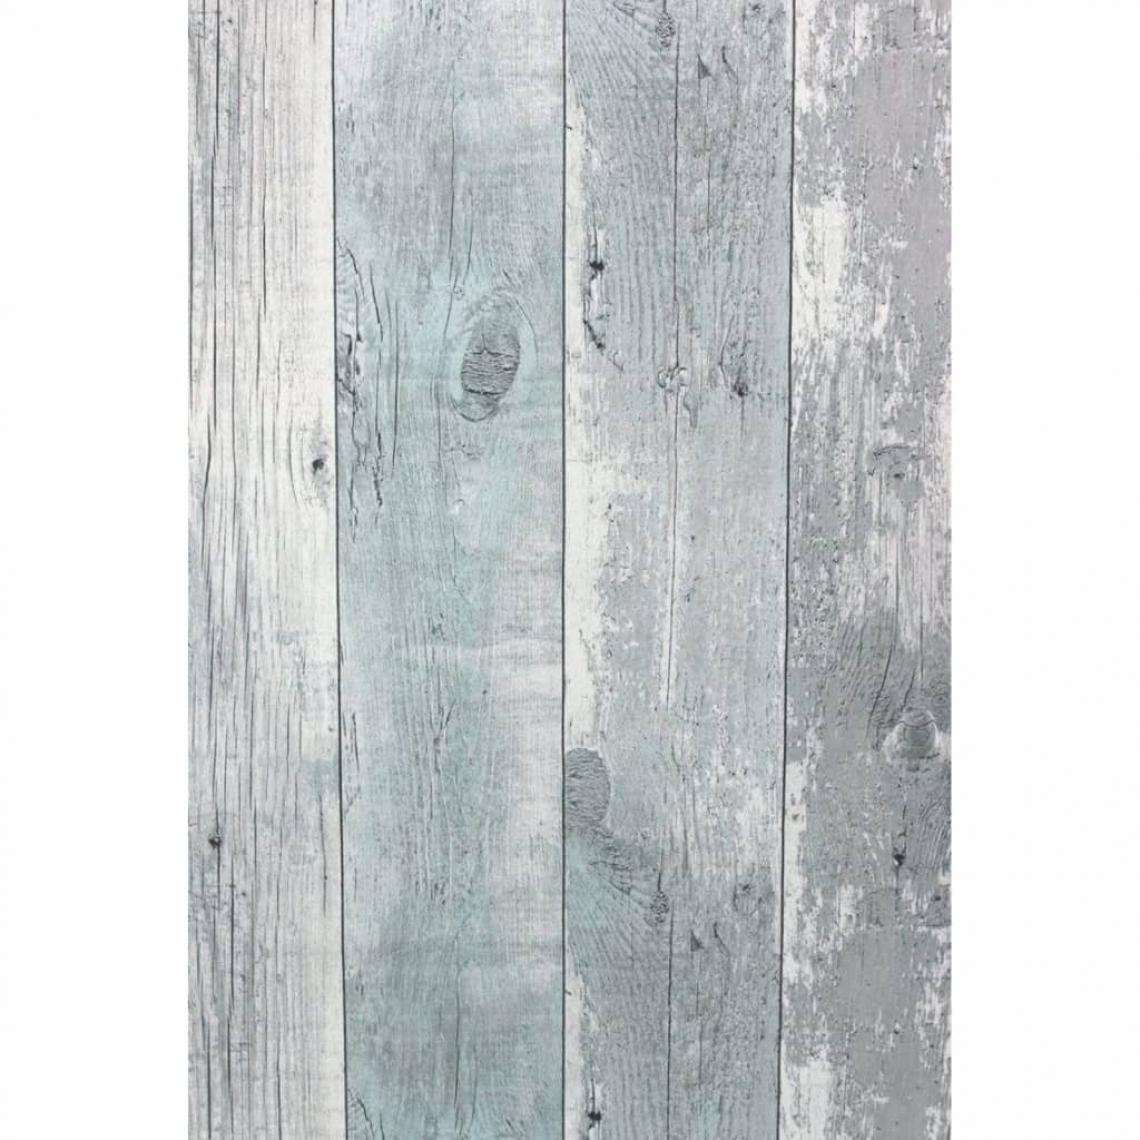 TOPCHIC - Topchic Papier peint Wooden Planks Gris et bleu - Papier peint